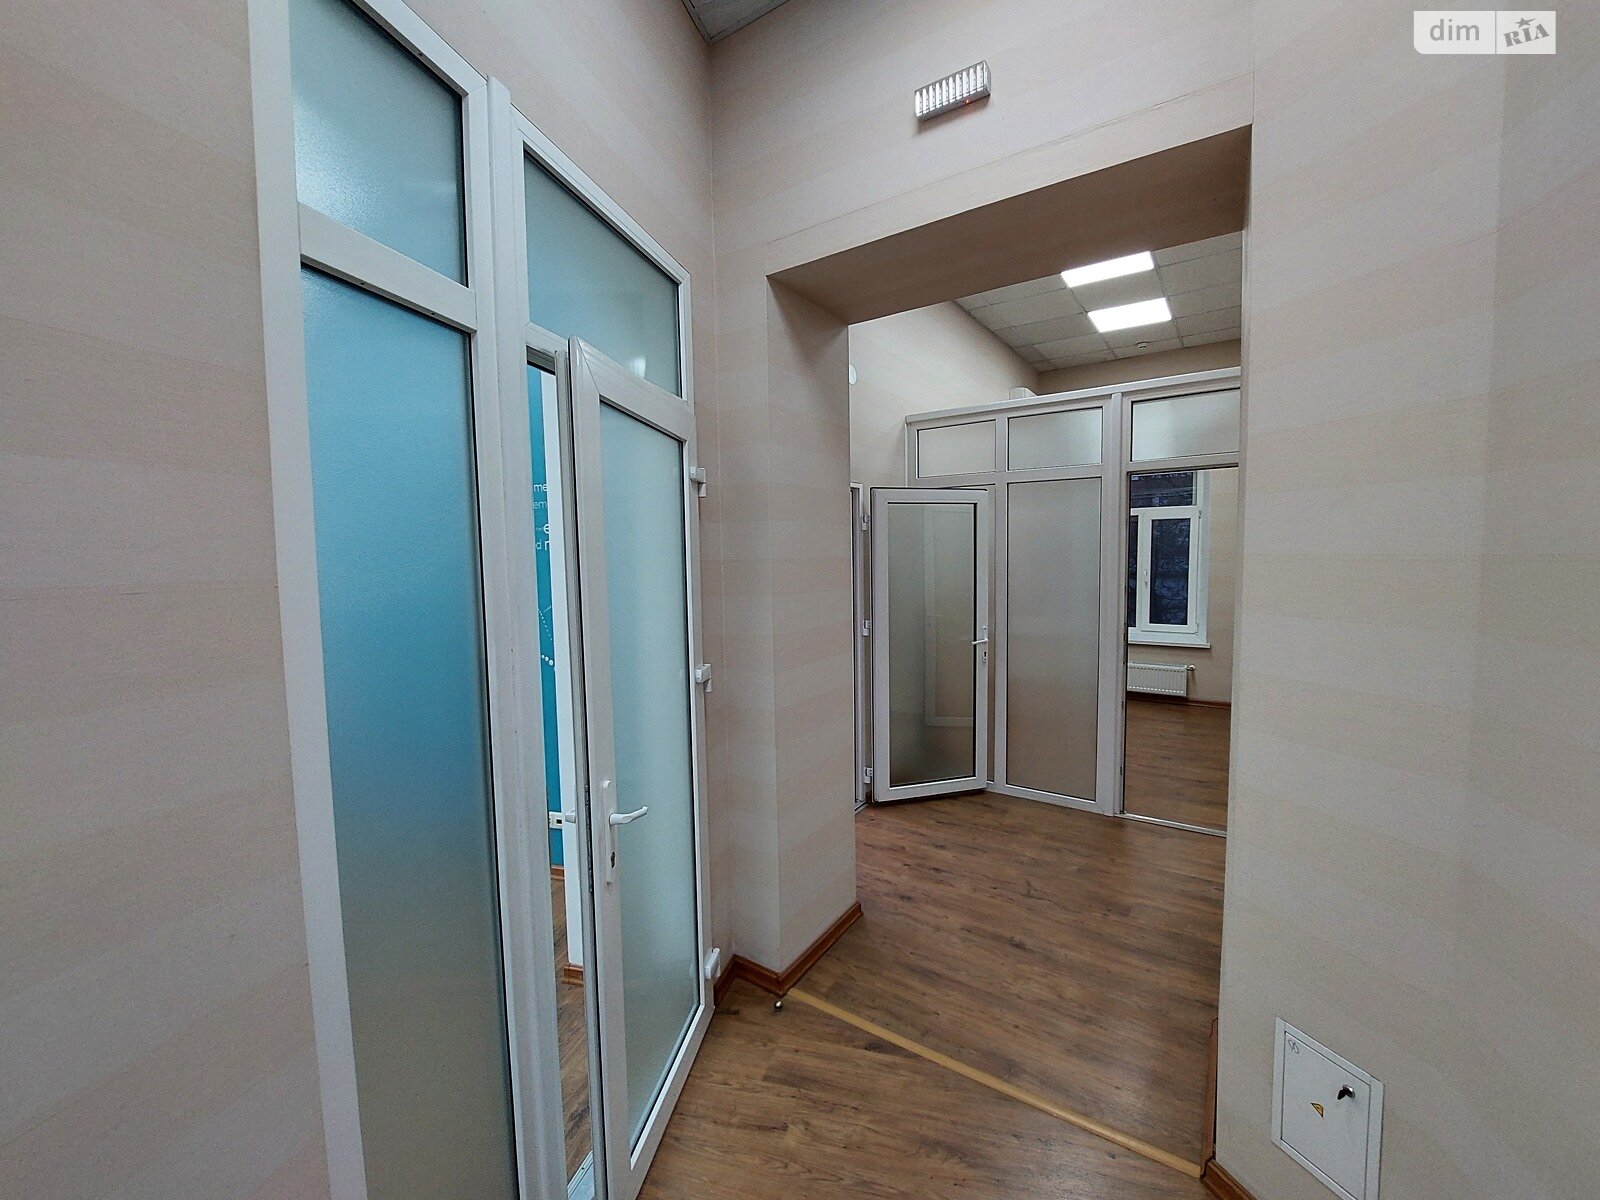 Аренда офисного помещения в Николаеве, Центральный проспект, помещений - 4, этаж - 2 фото 1